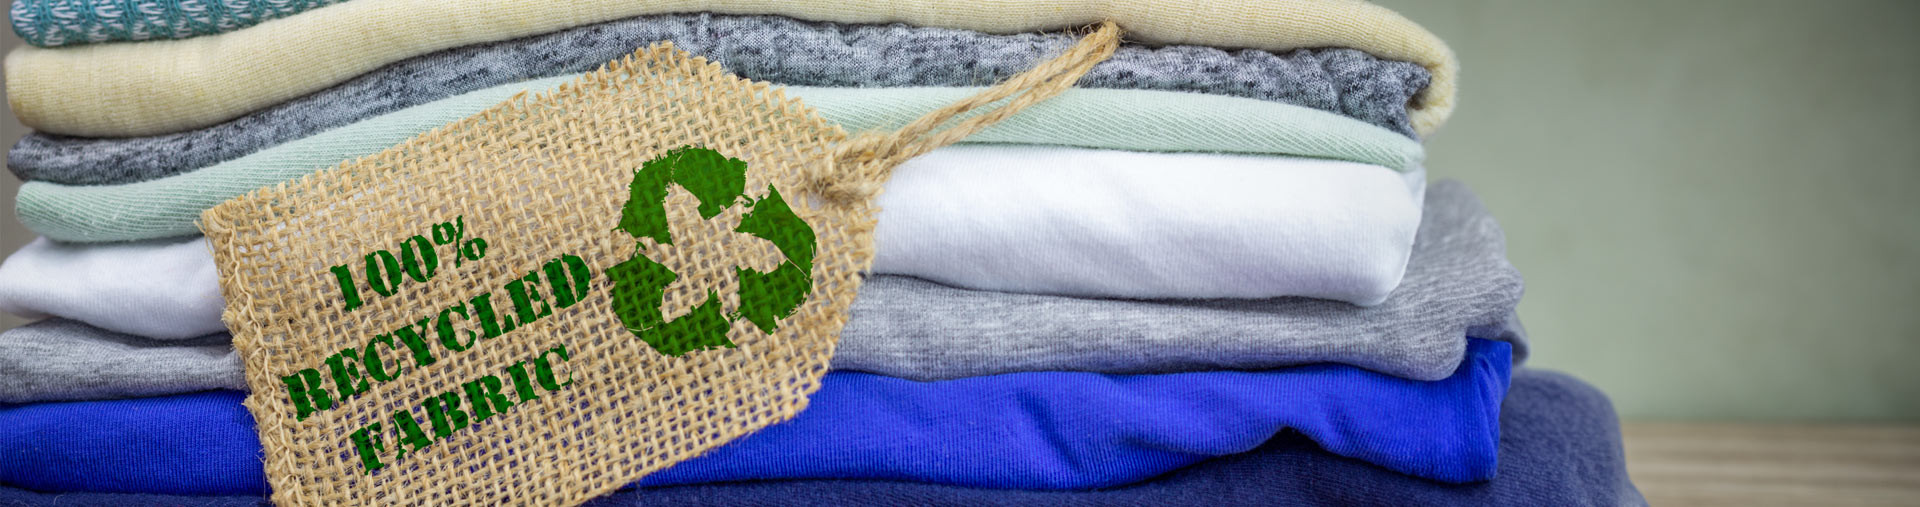 Avec Ecobalyse, le gouvernement aide l’industrie du textile à mesurer son impact environnemental